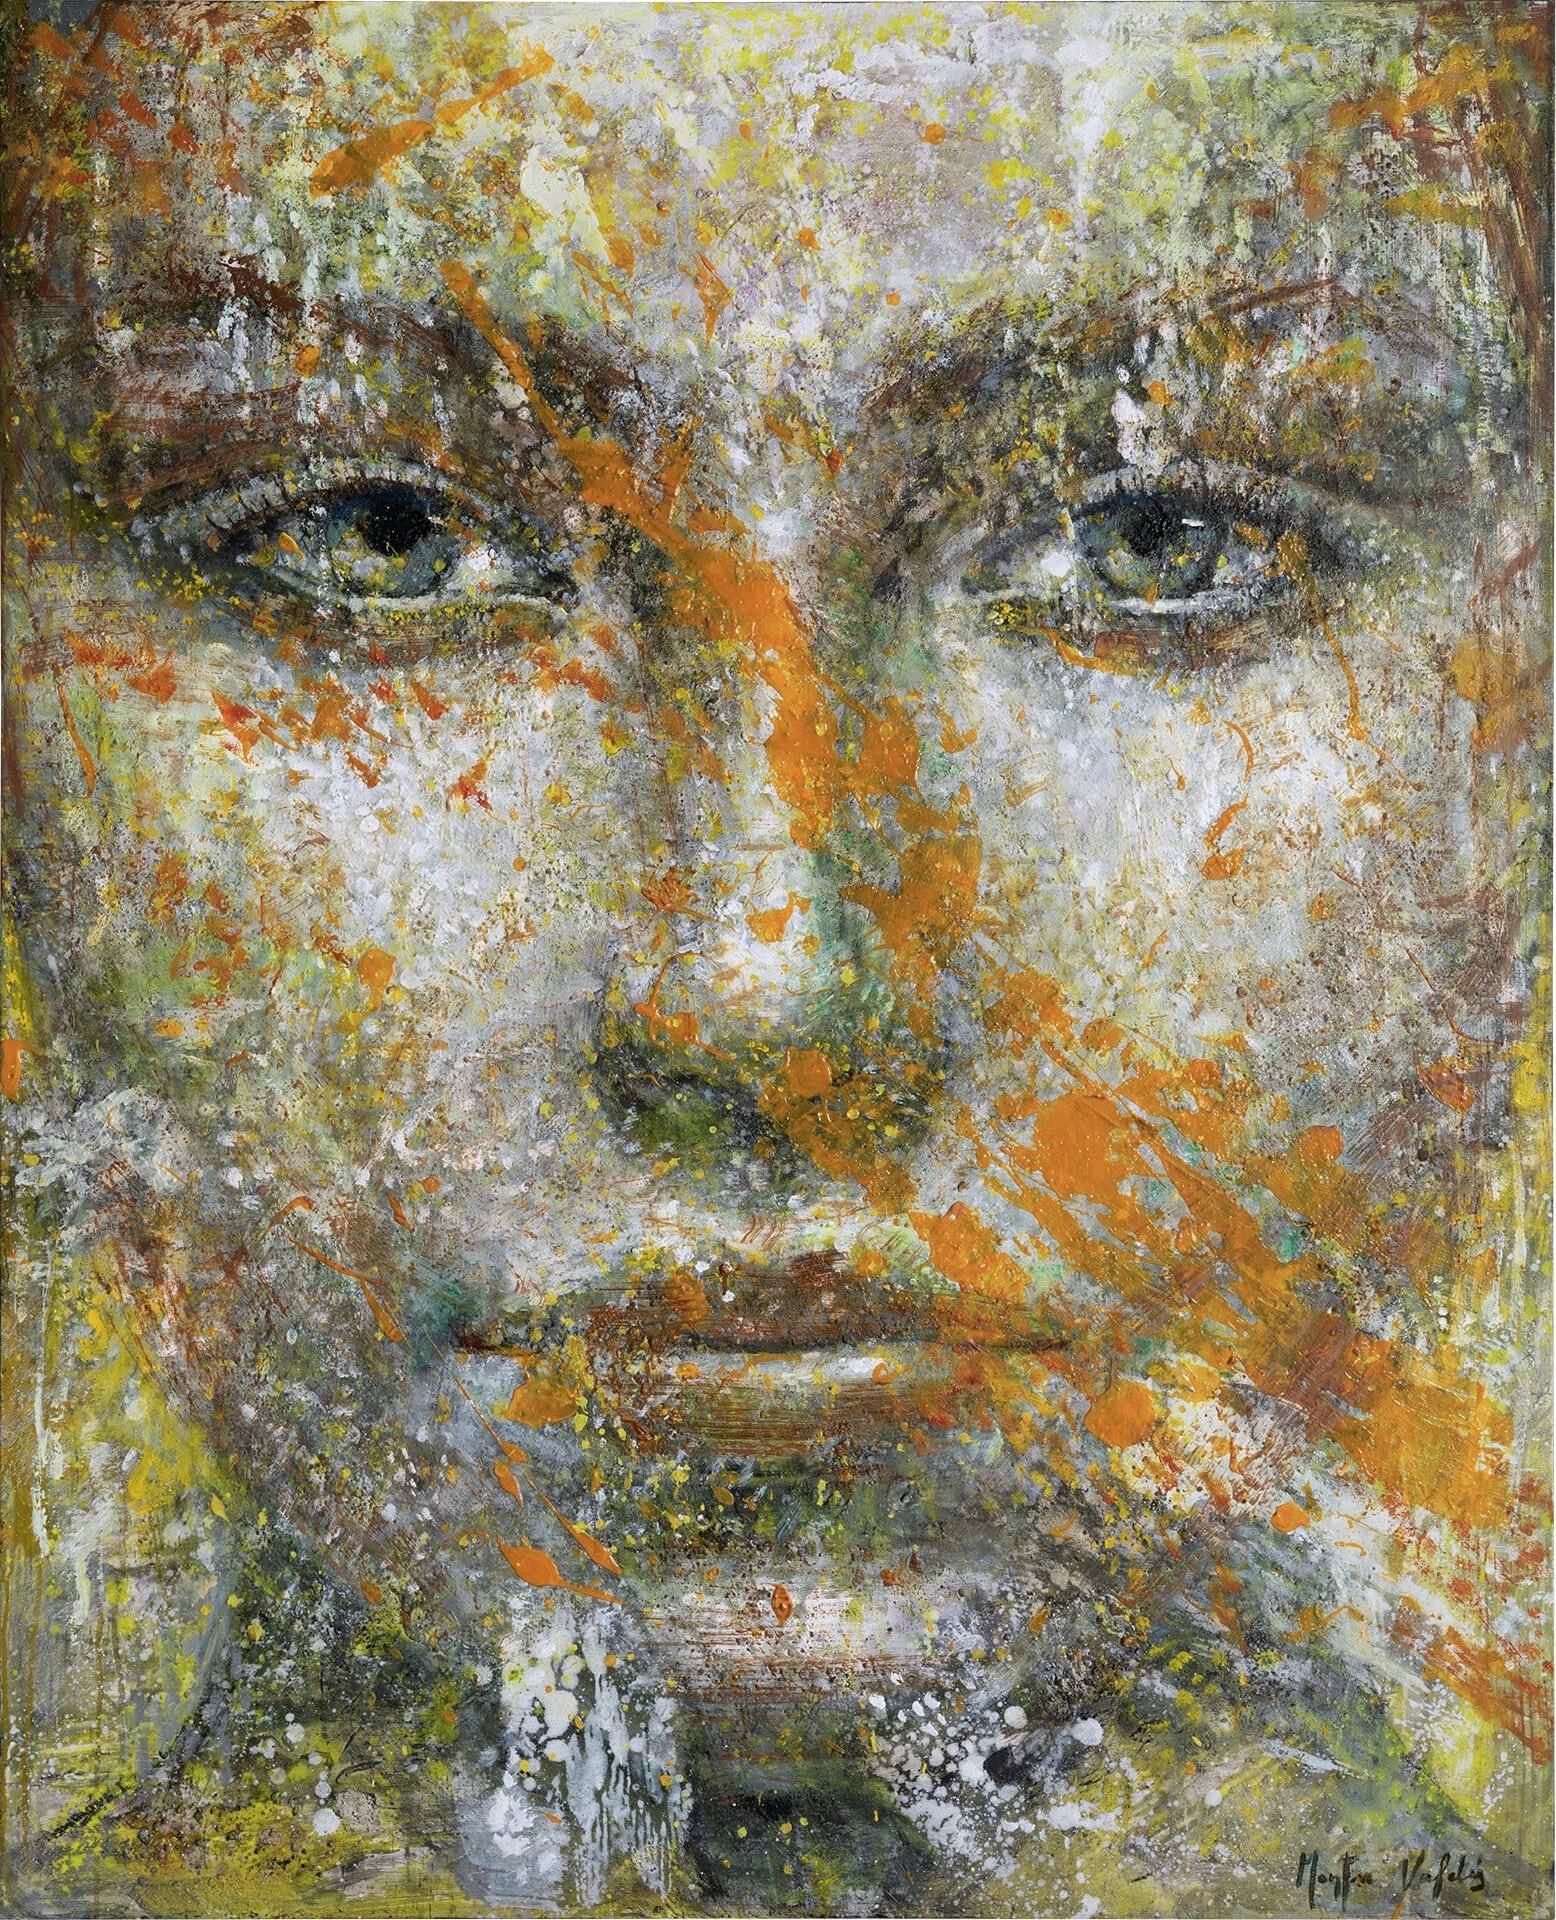 Figurative Painting Montse Valdés - 10-1-21 (Diptyque) - 21e siècle, contemporain, peinture de portrait, huile sur toile